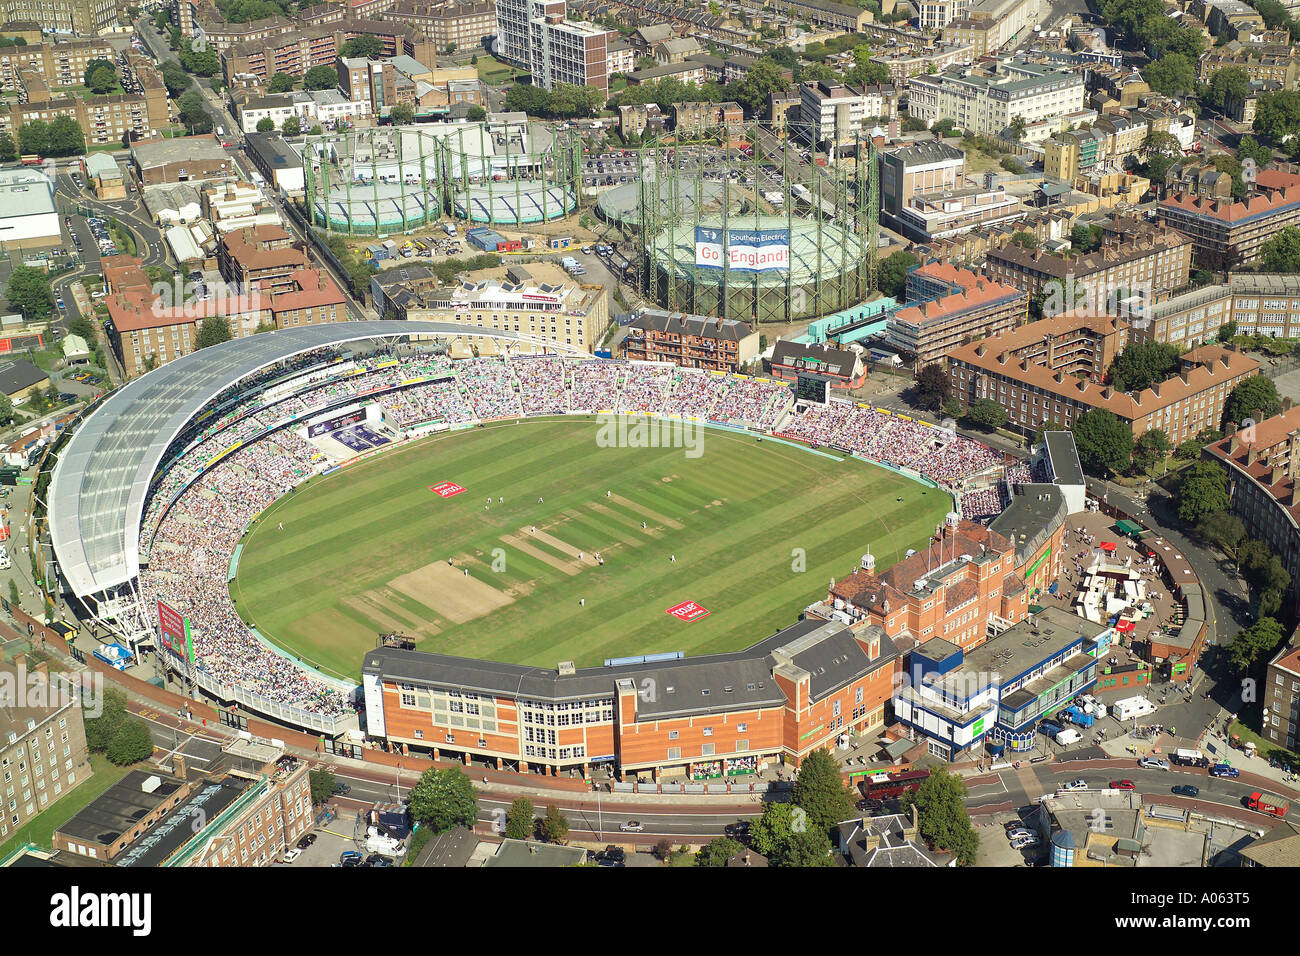 Vue aérienne de l'ovale à Londres, home of Surrey County Cricket Club, prises au cours du dernier match des cendres, l'Angleterre v Australie Banque D'Images